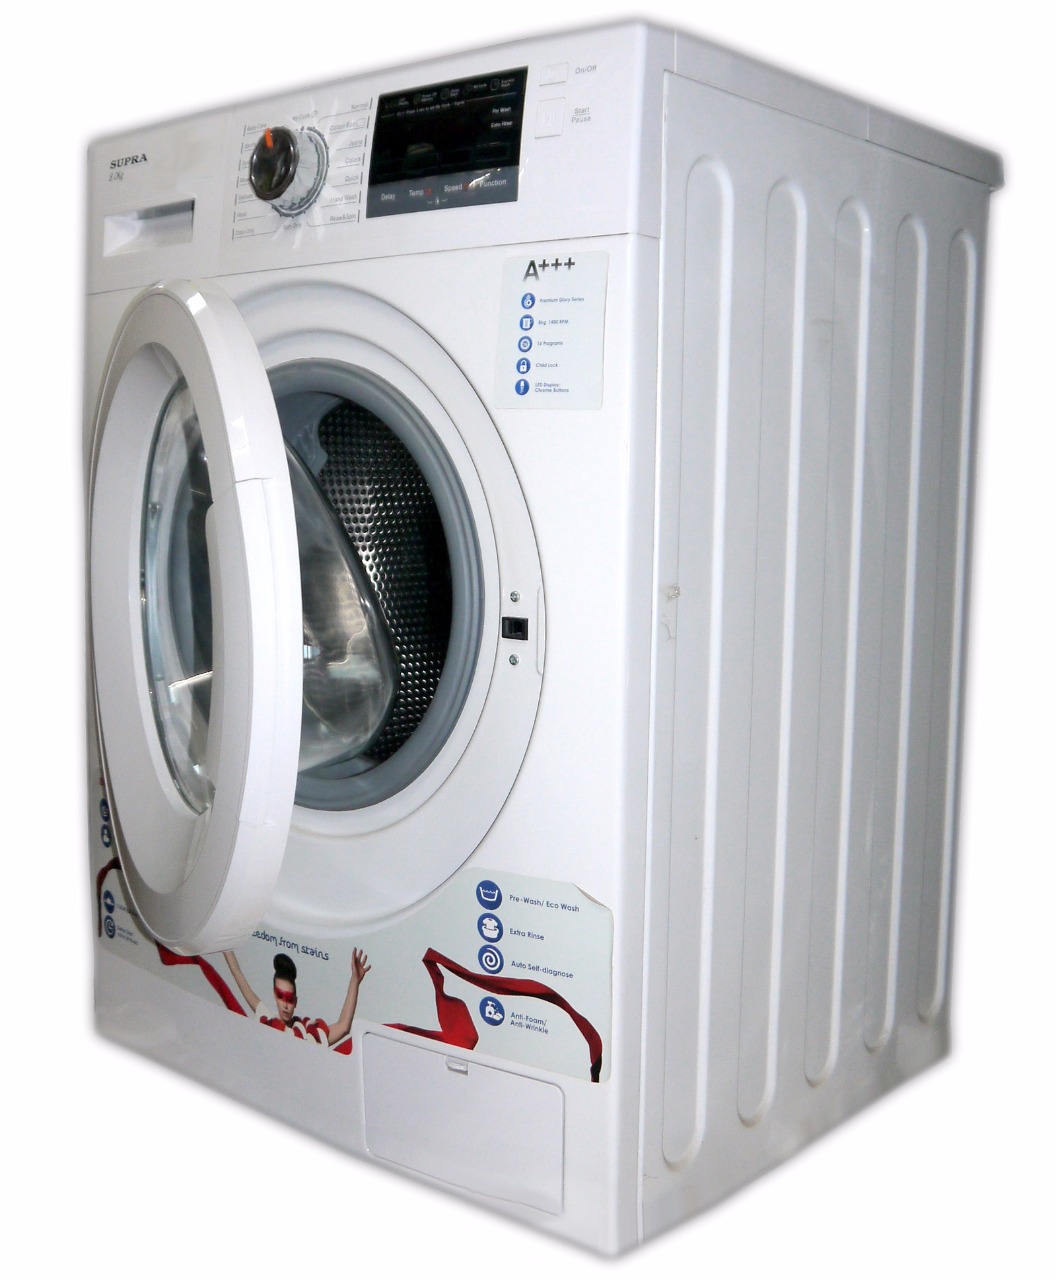 Supra front load washing machine 8kg